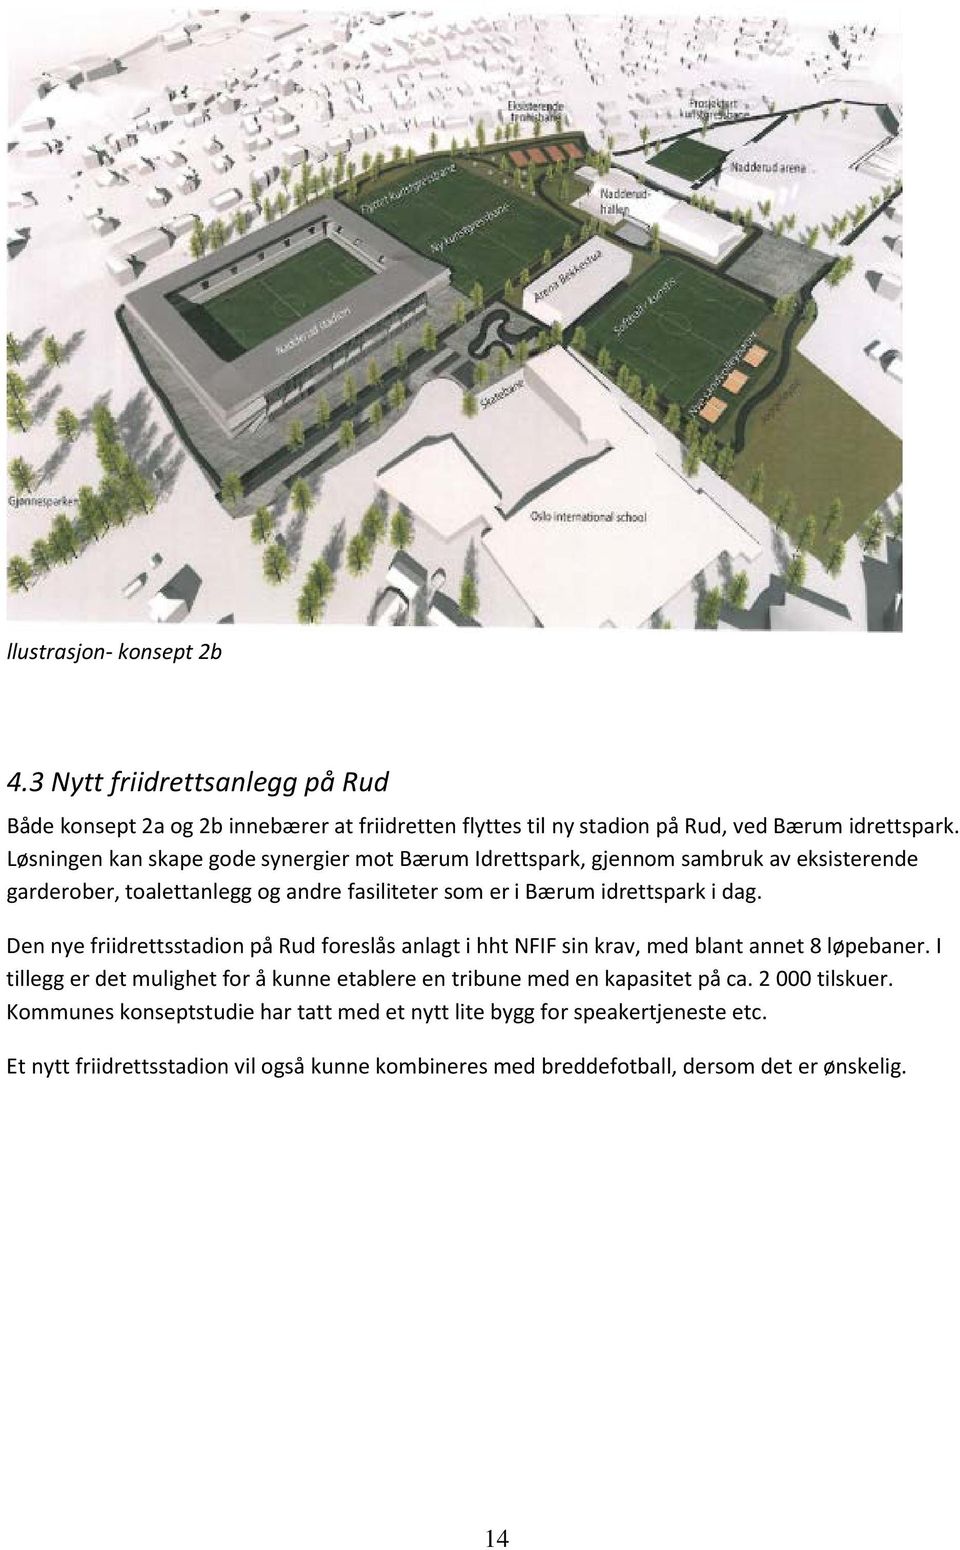 Den nye friidrettsstadion på Rud foreslås anlagt i hht NFIF sin krav, med blant annet 8 løpebaner.